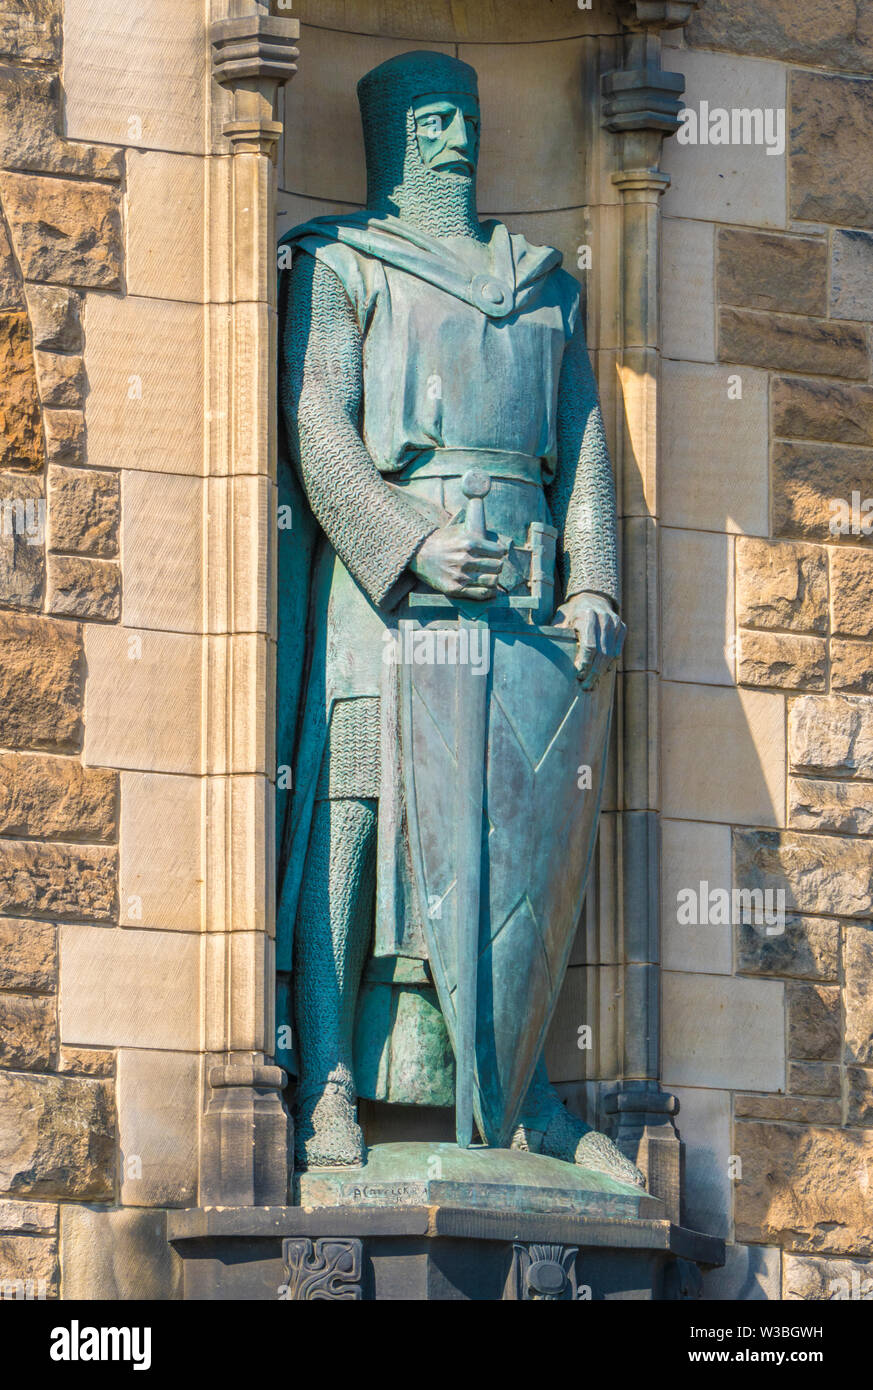 Statue de William Wallace (un chevalier écossais médiéval célèbre combattant de la liberté), qui monte la garde à l'entrée du château d'Édimbourg. L'Écosse, au Royaume-Uni. Banque D'Images